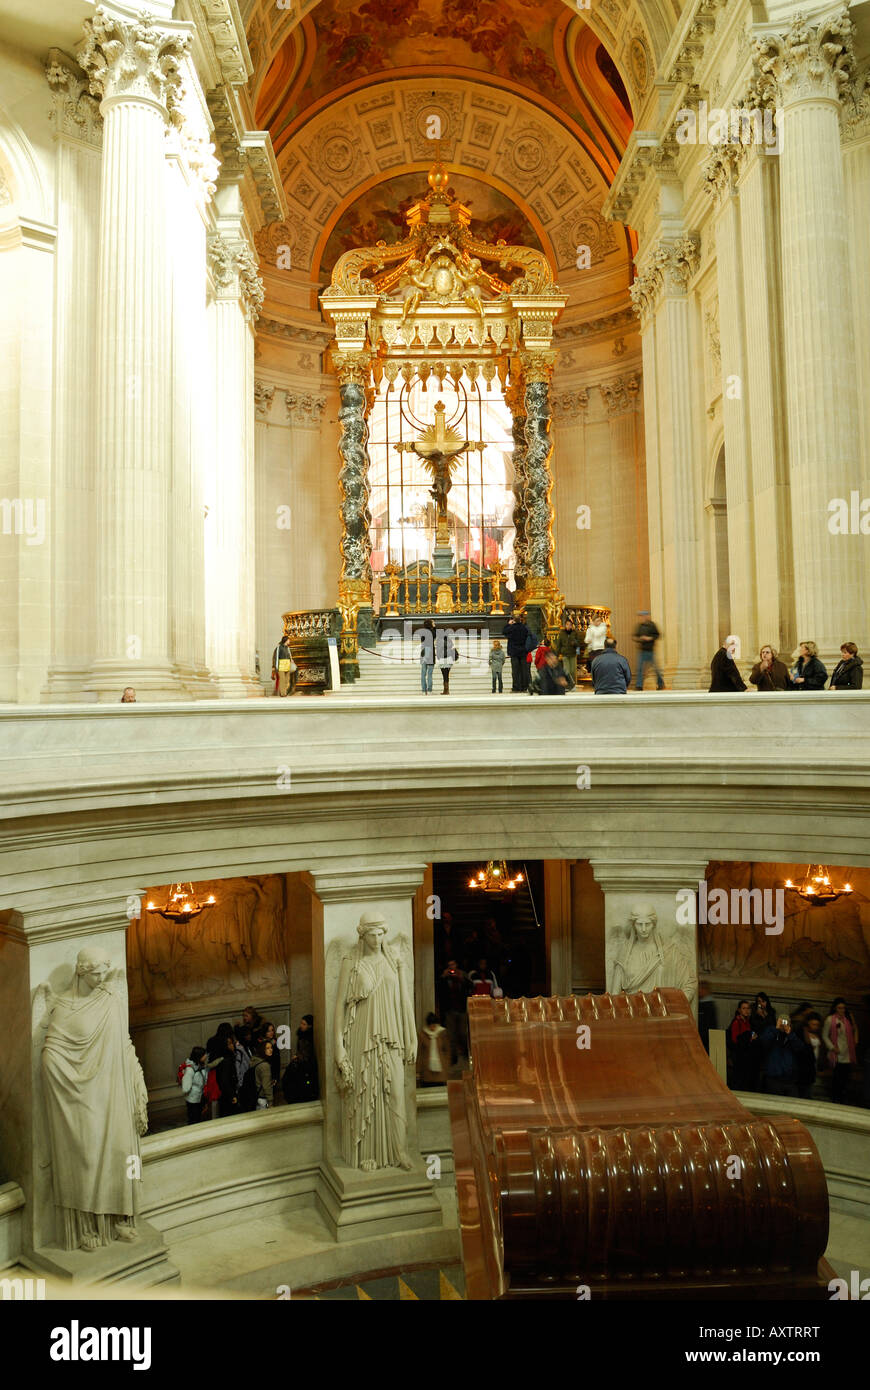 Ispirato dalla Basilica di San Pietro a Roma l'Église du Dôme è uno dei trionfi del barocco francese e architettura gesuitica. Foto Stock